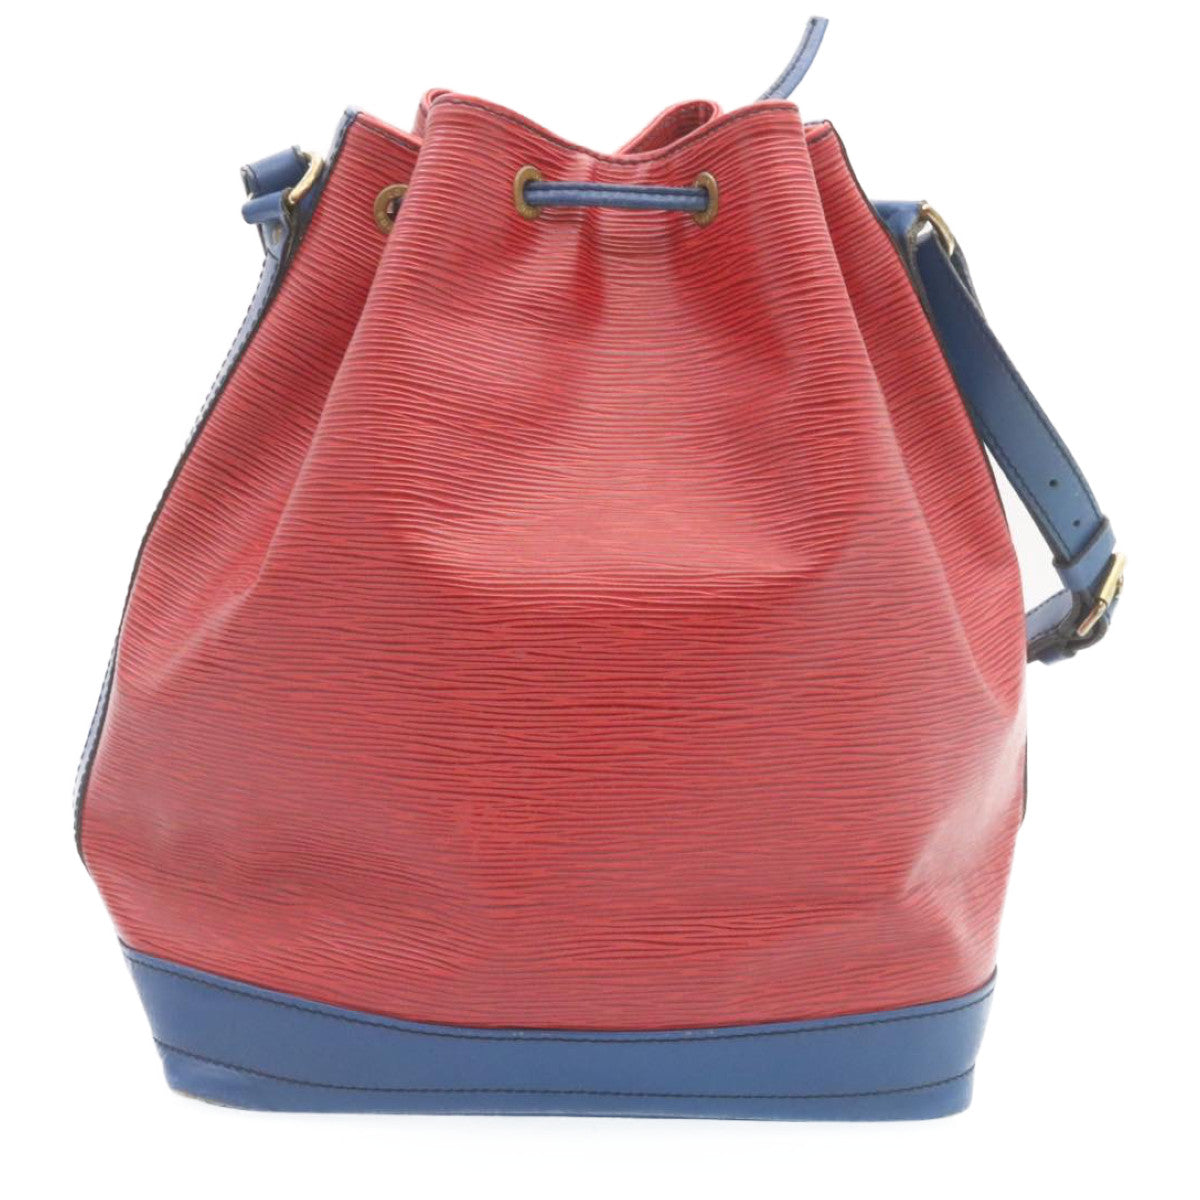 LOUIS VUITTON Epi Noe Bicolor Shoulder Bag Blue Red M44084 LV Auth jk796